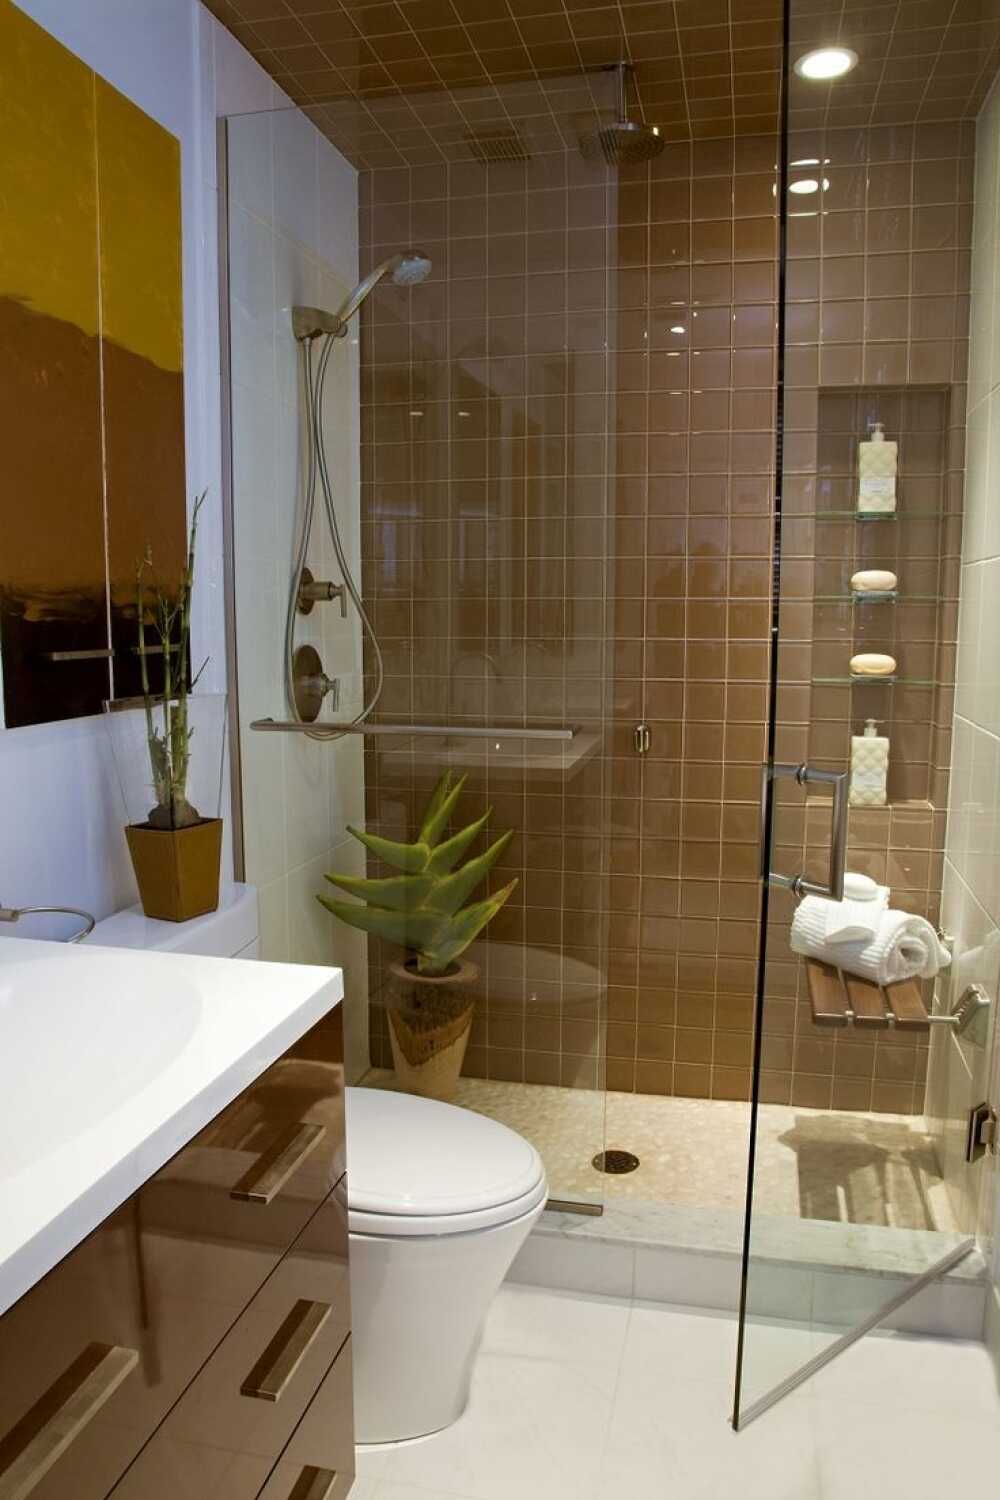 Hình ảnh thiết kế phòng tắm nhỏ sẽ đem đến cho bạn những gợi ý và kiến thức về cách tối ưu hóa không gian nhà tắm của bạn.